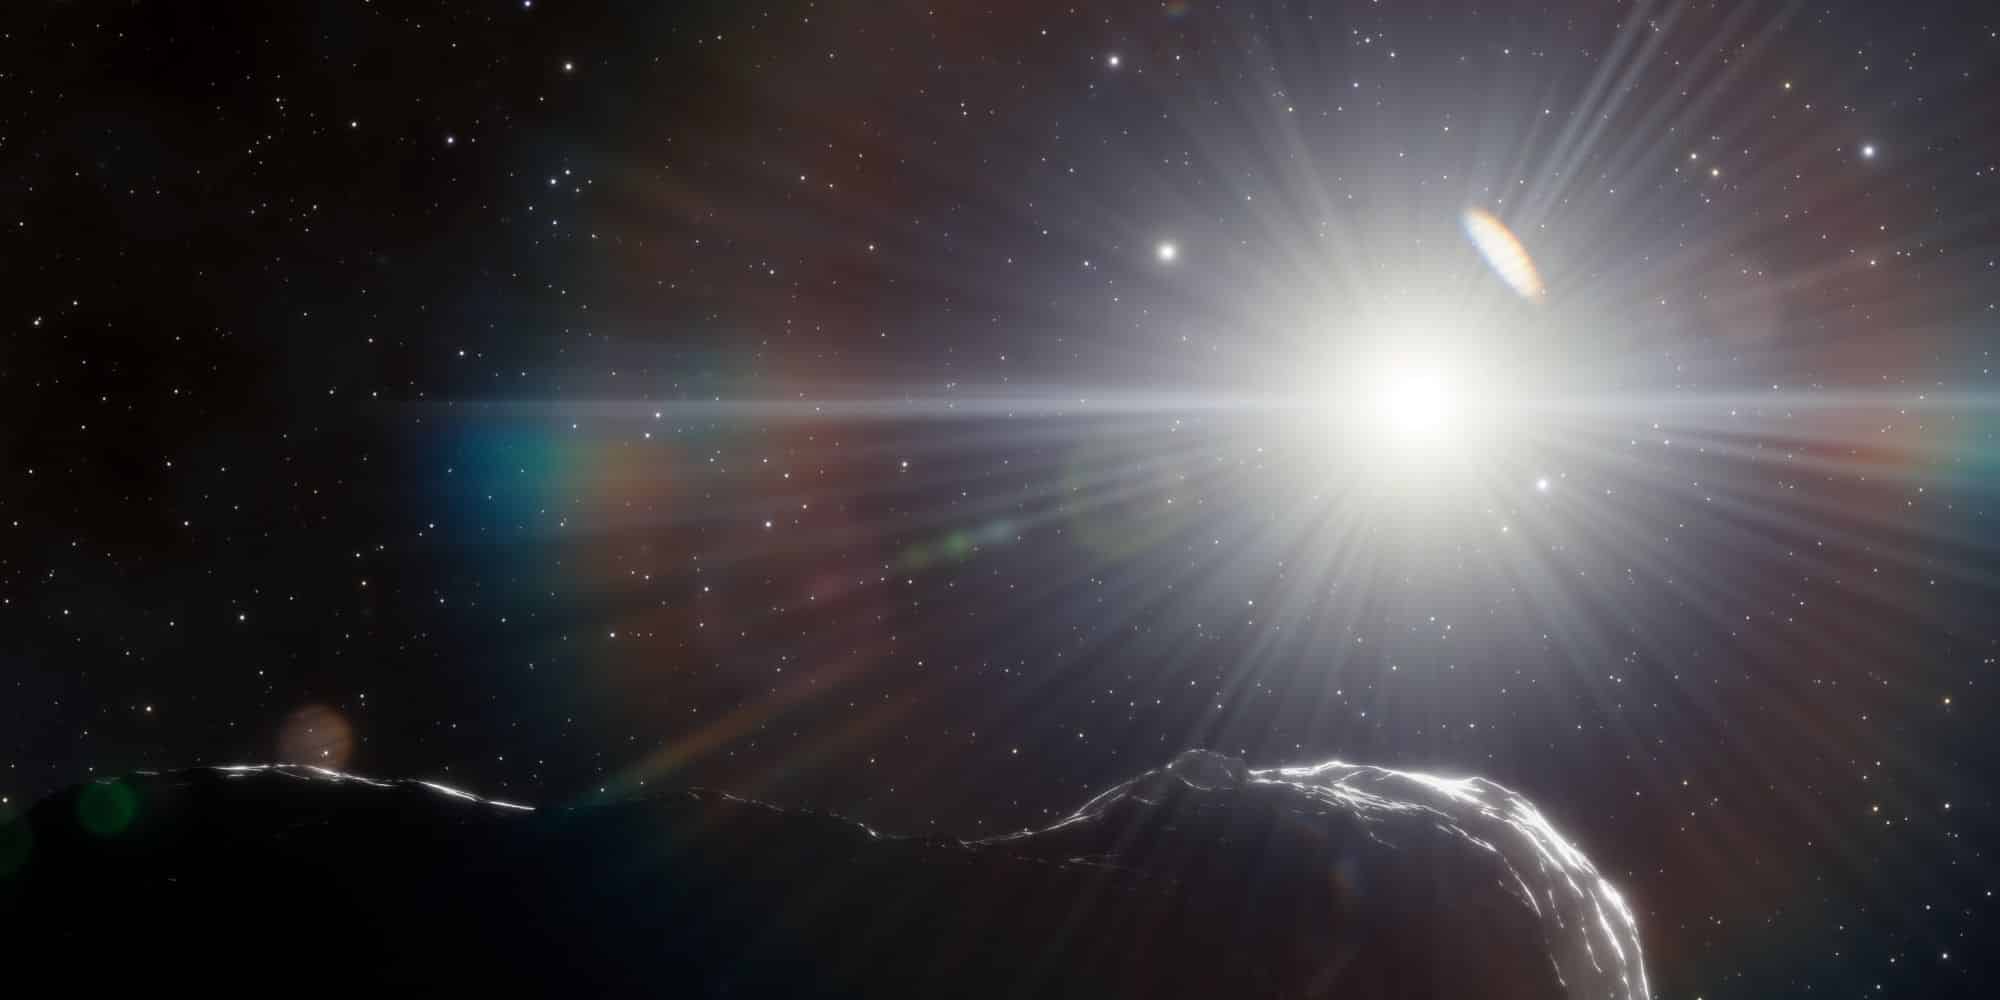 Ο μεγάλος αστεροειδής που ανακαλύφθηκε